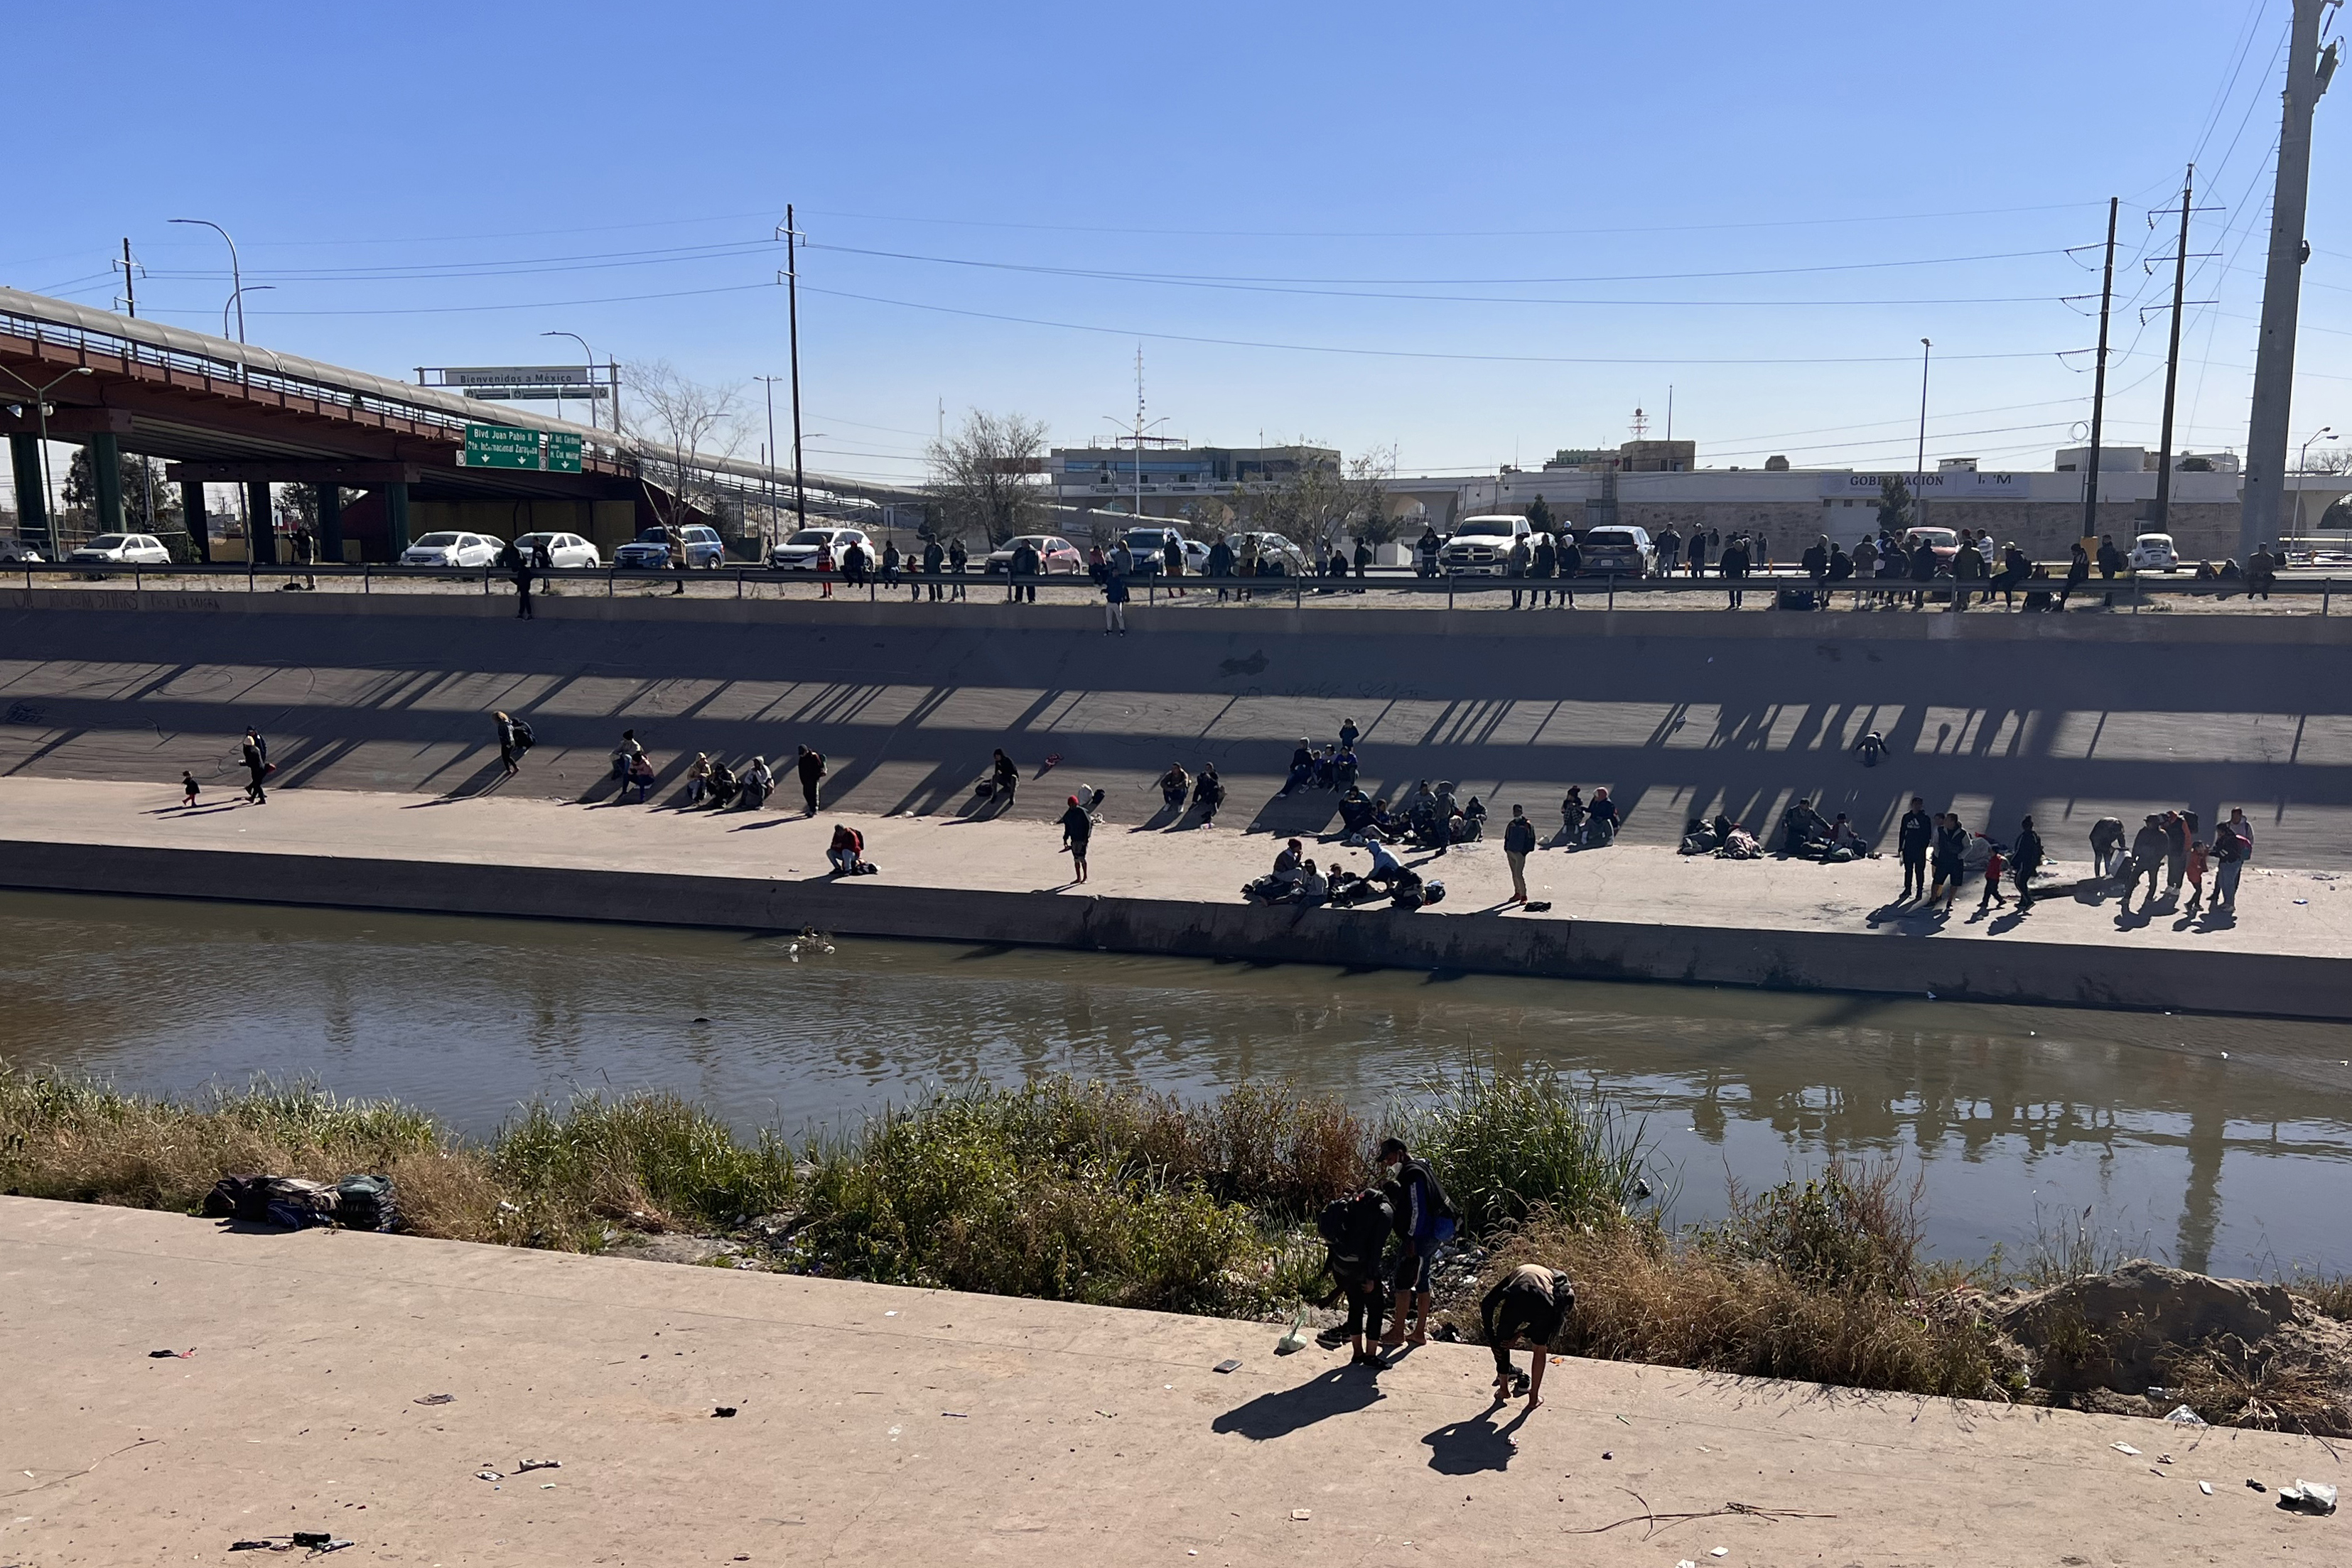 Aconsejan no cruzar: EEUU advierte a migrantes sobre el frío extremo en la frontera